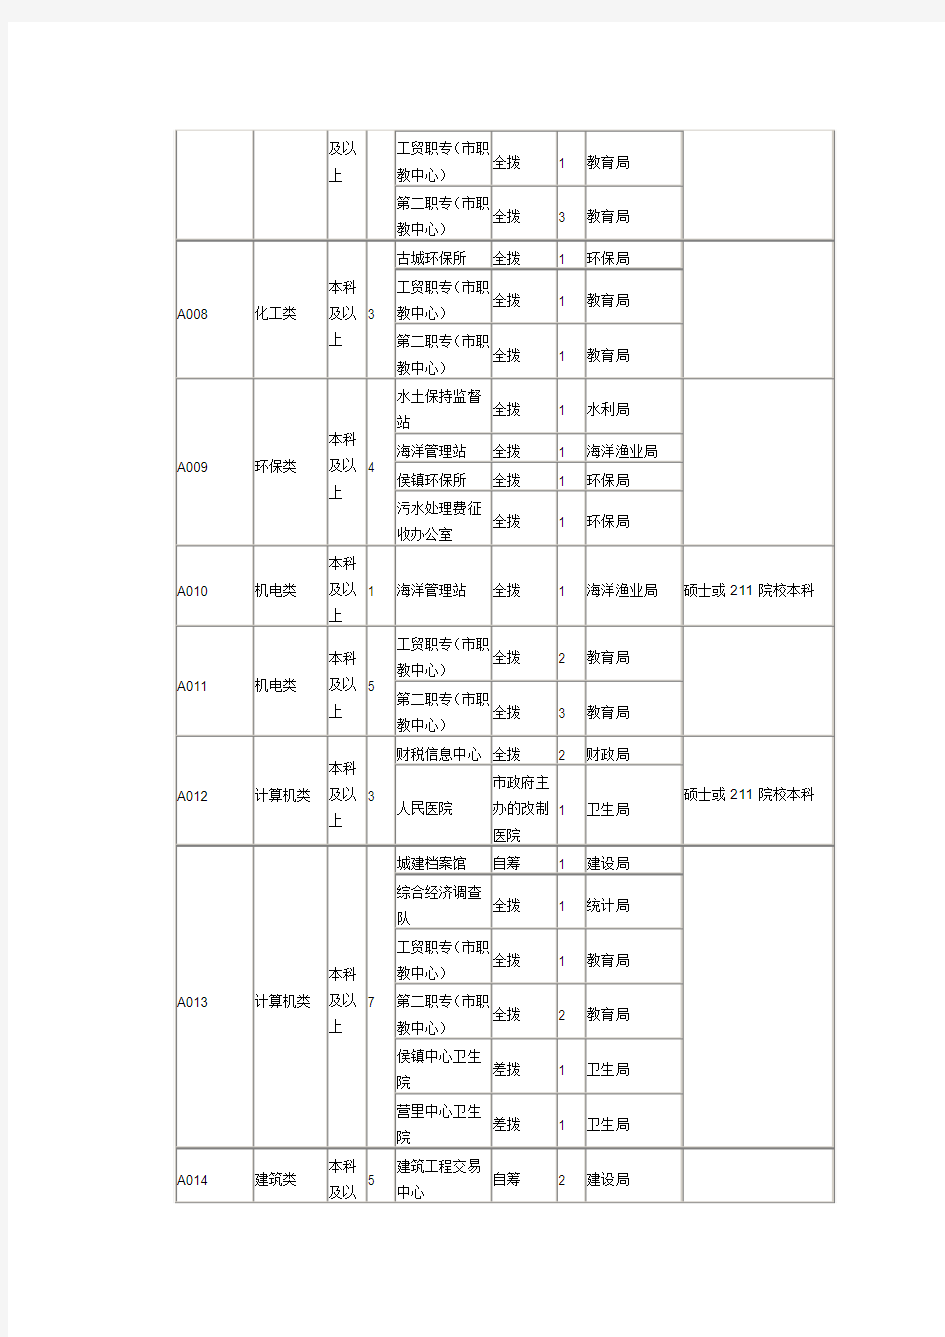 寿光市2012年部分事业单位公开招聘人员岗位表